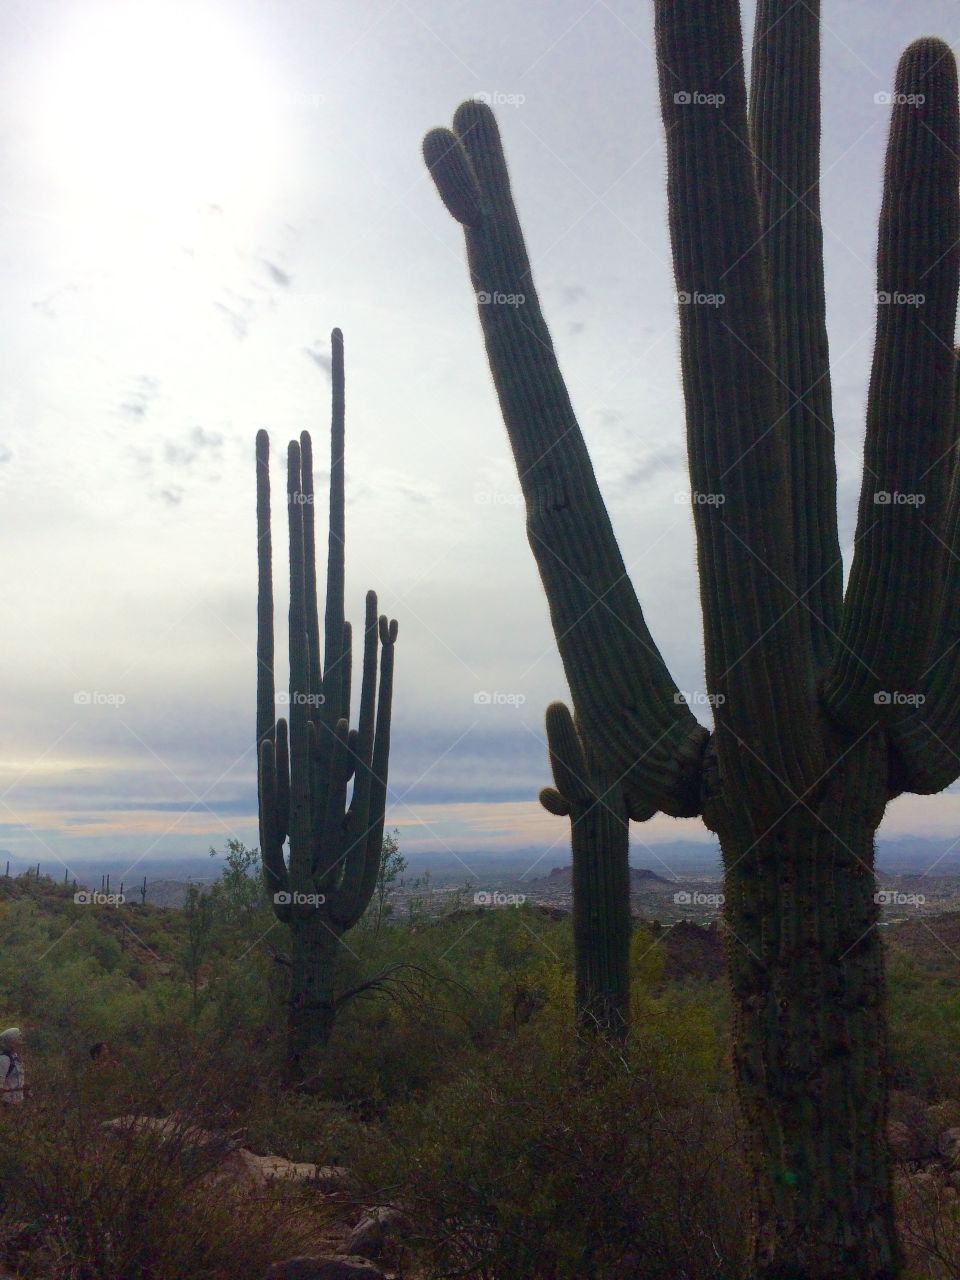 The Great Saguaro Cacti of Arizona 